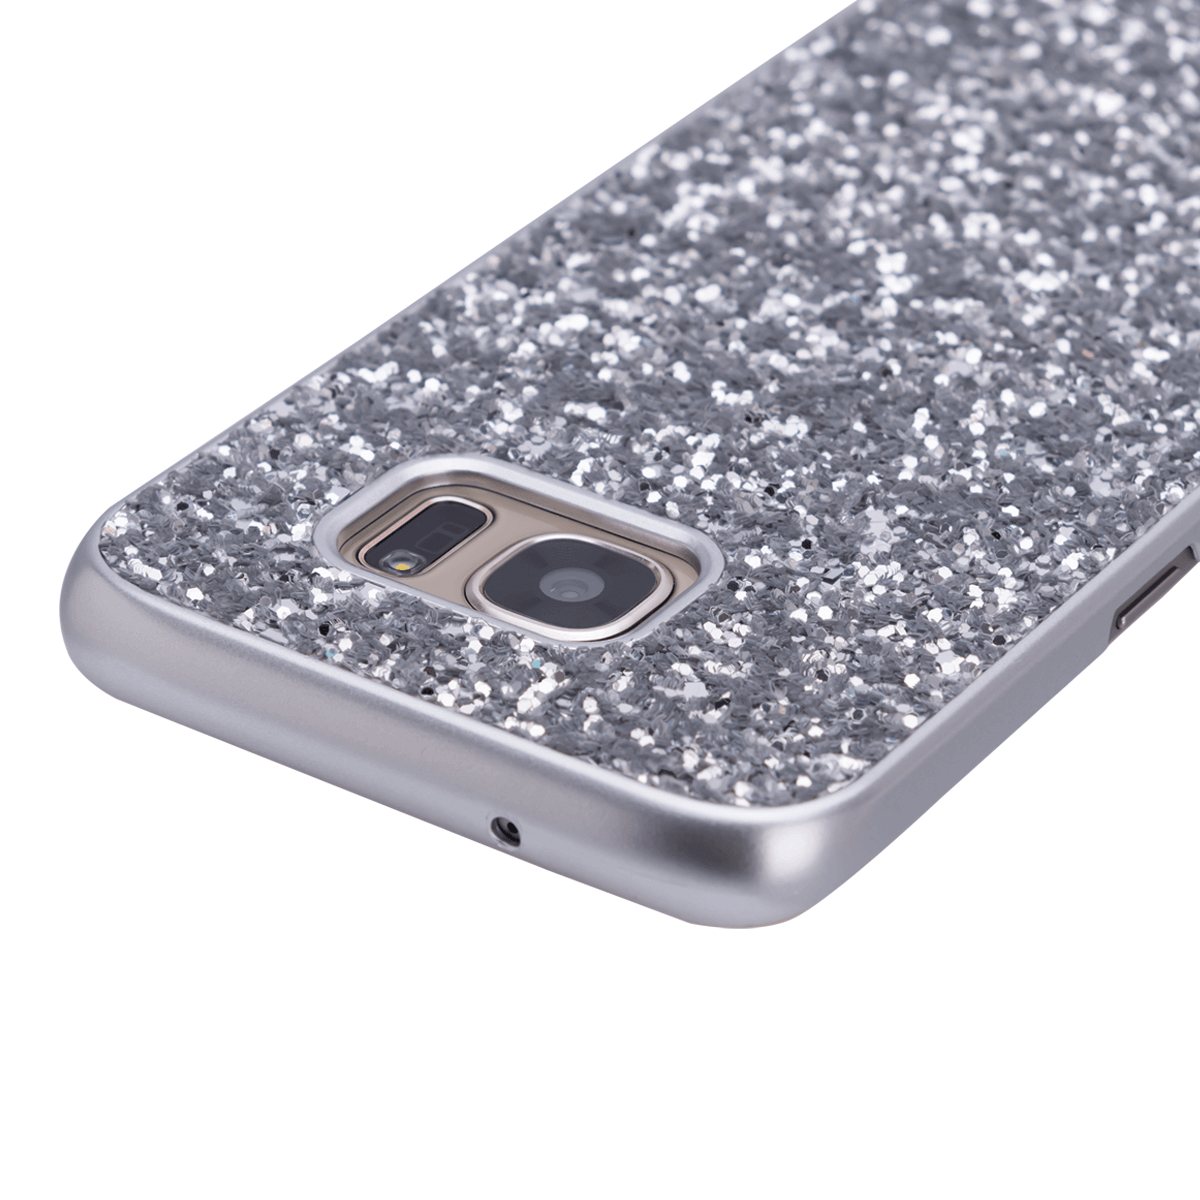 Samsung S7 için spada Glitter Gümüş renk kapak